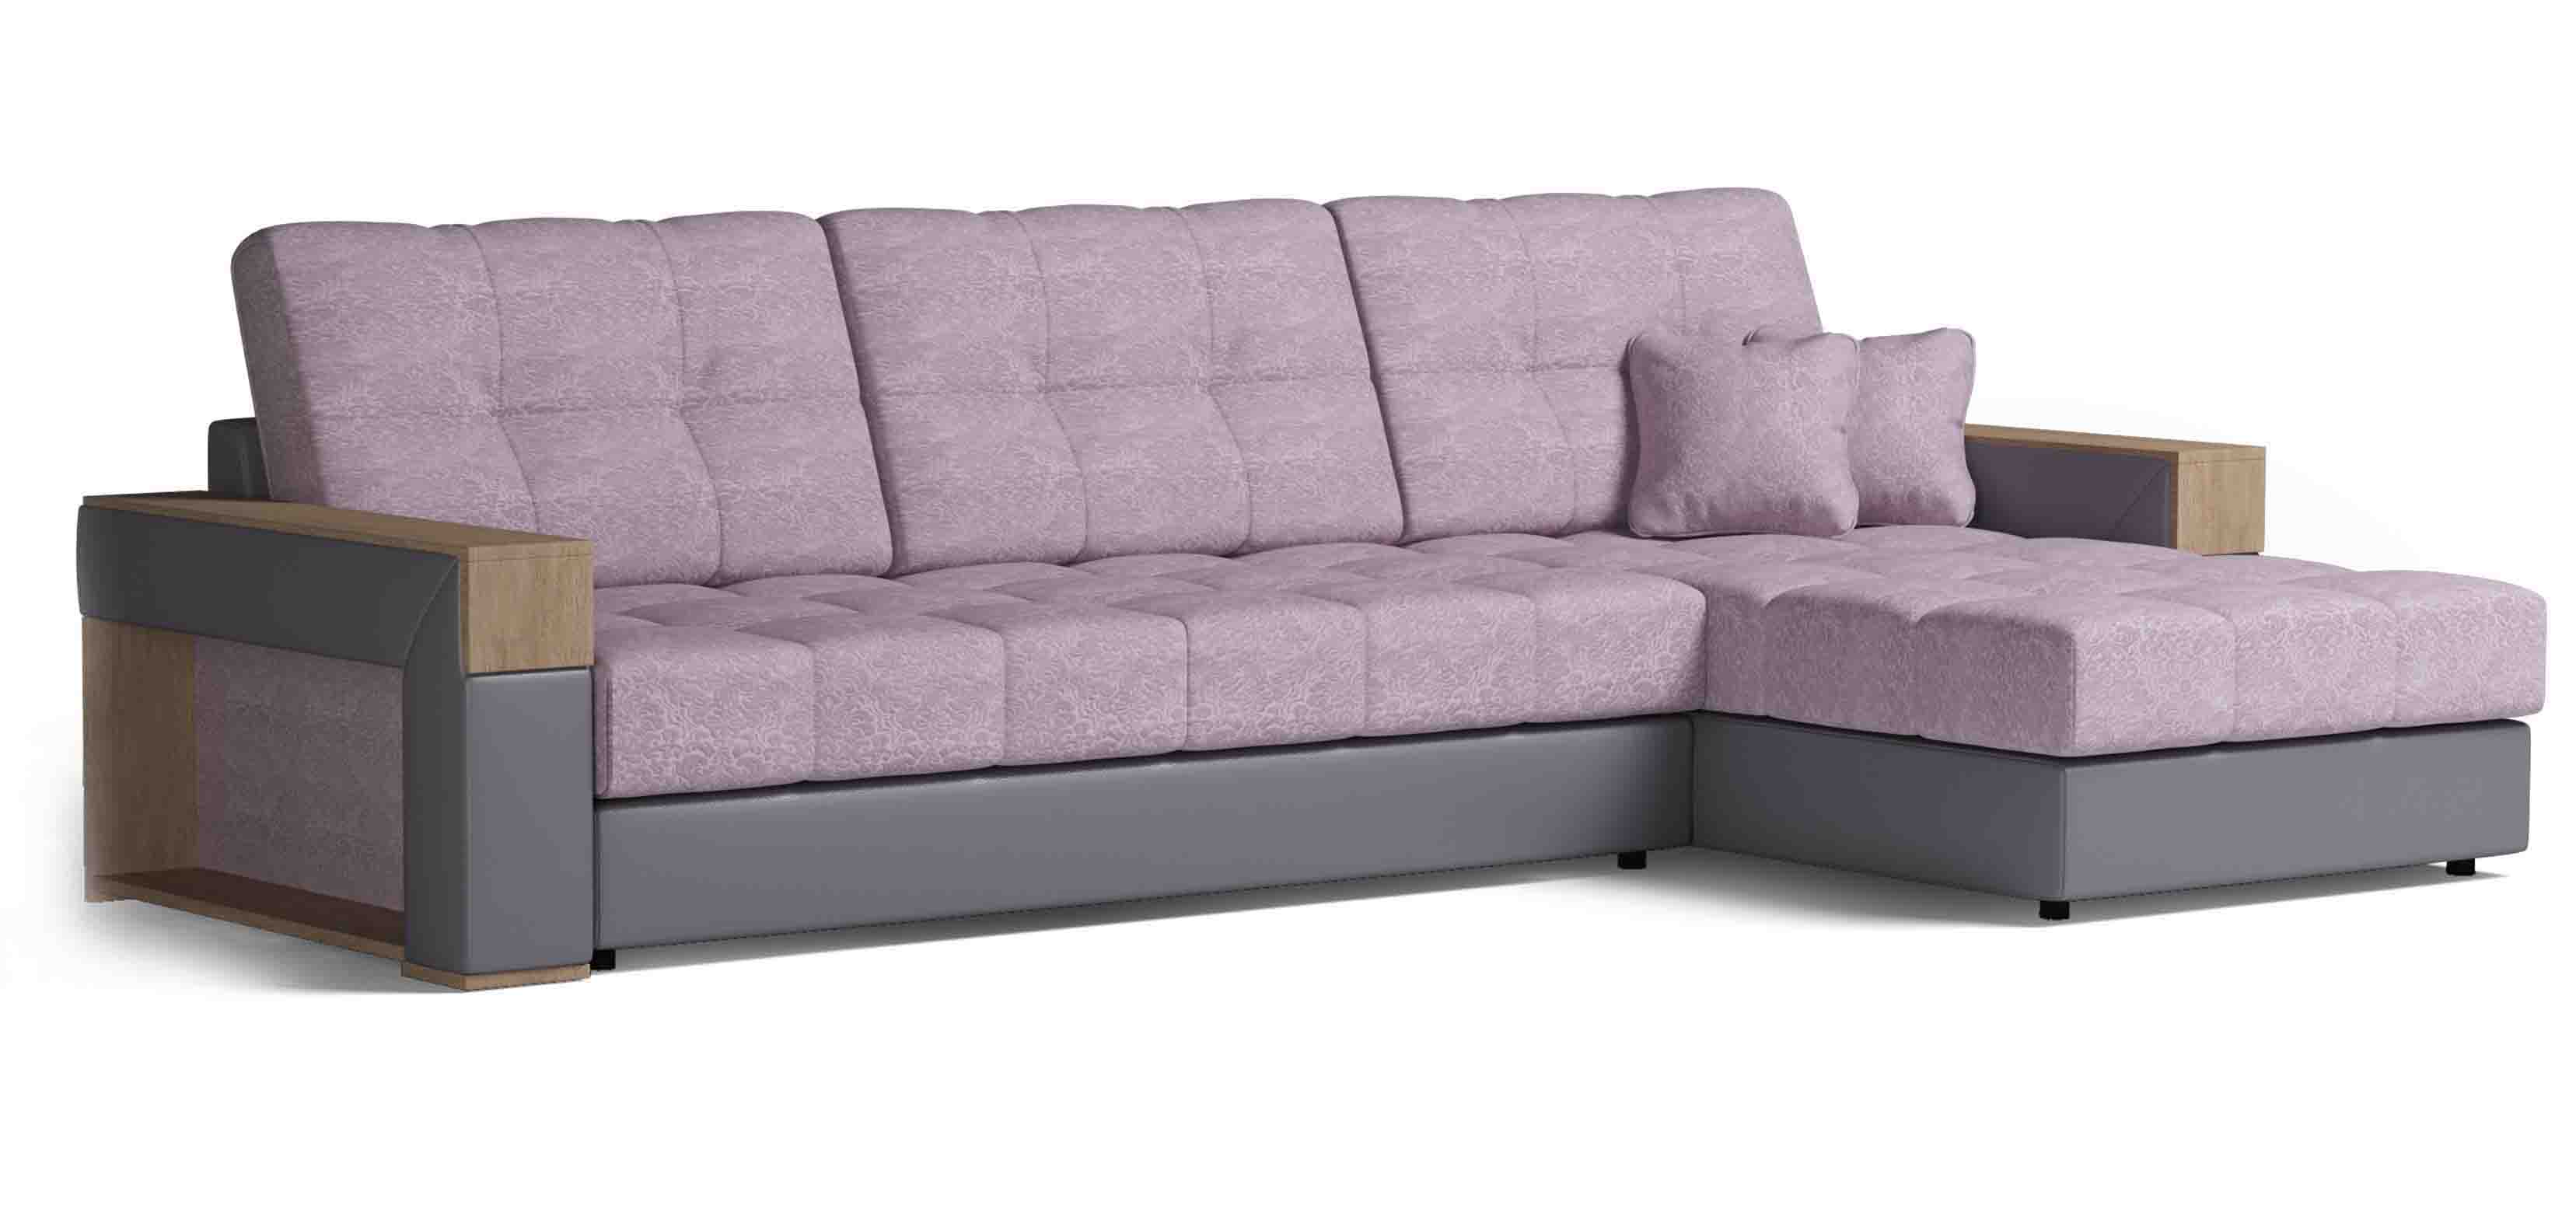 Угловой диван Женева   по цене от производителя .